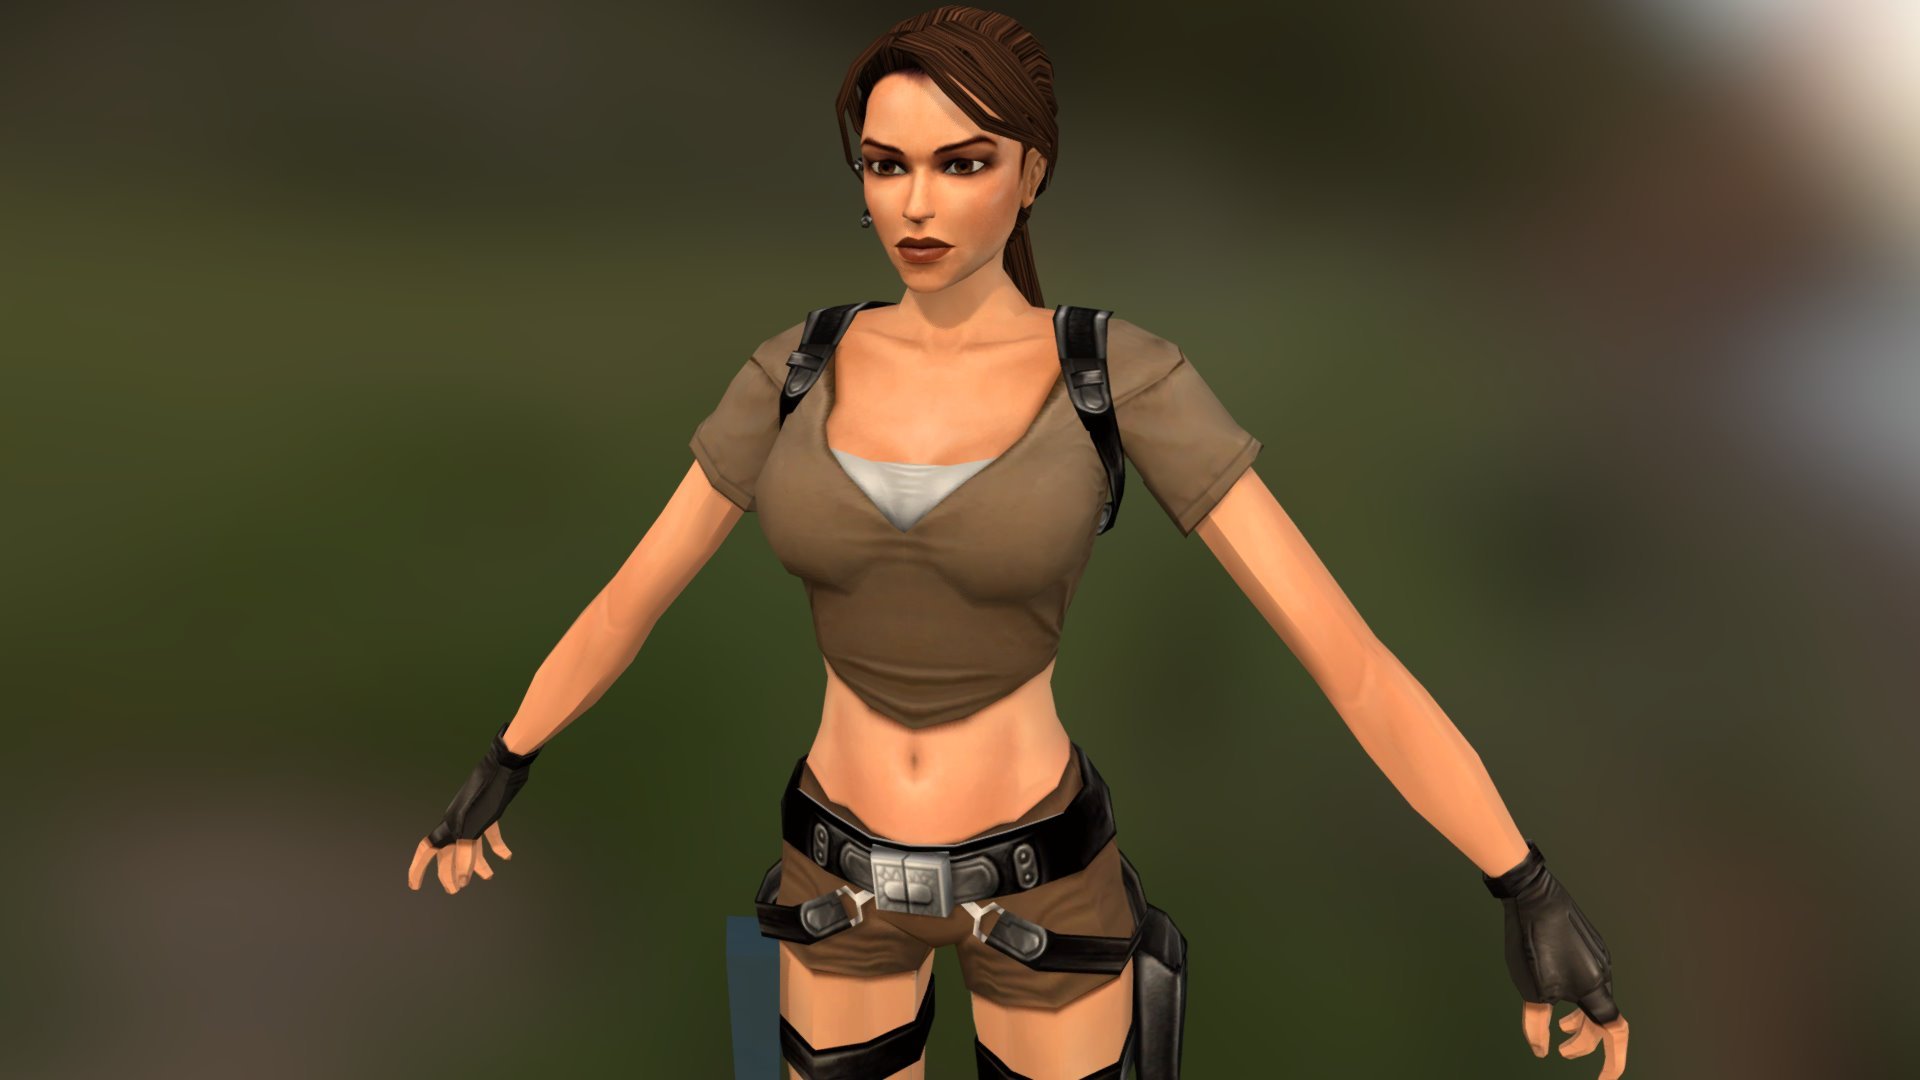 Lara Croft - 3D Model - 3D model by Kingdom Games (@EnriqueBaPr) 2ad7b25.